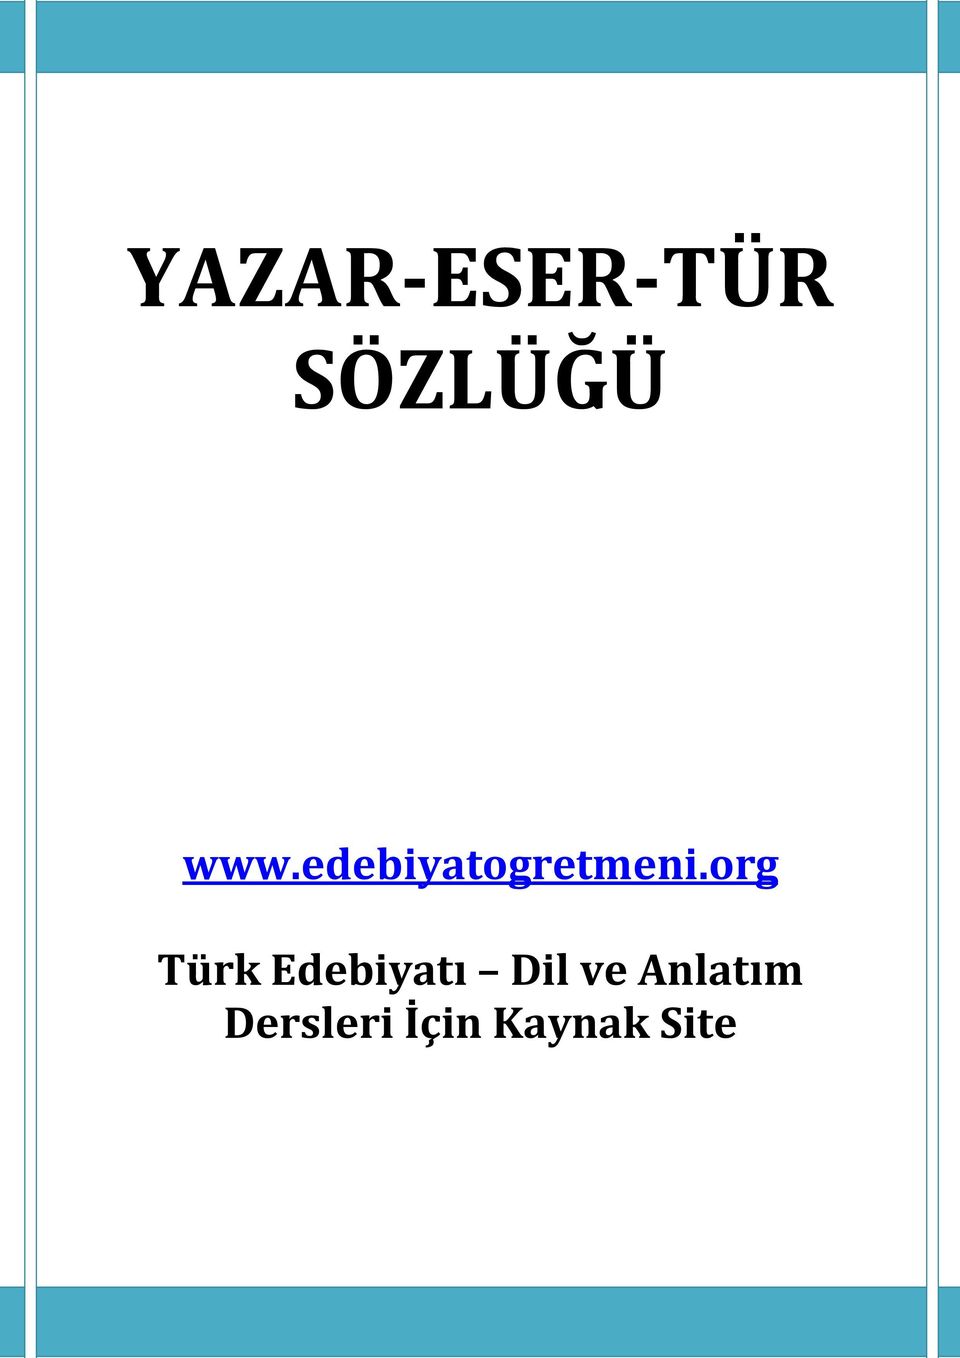 org Türk Edebiyatı Dil ve Anlatım